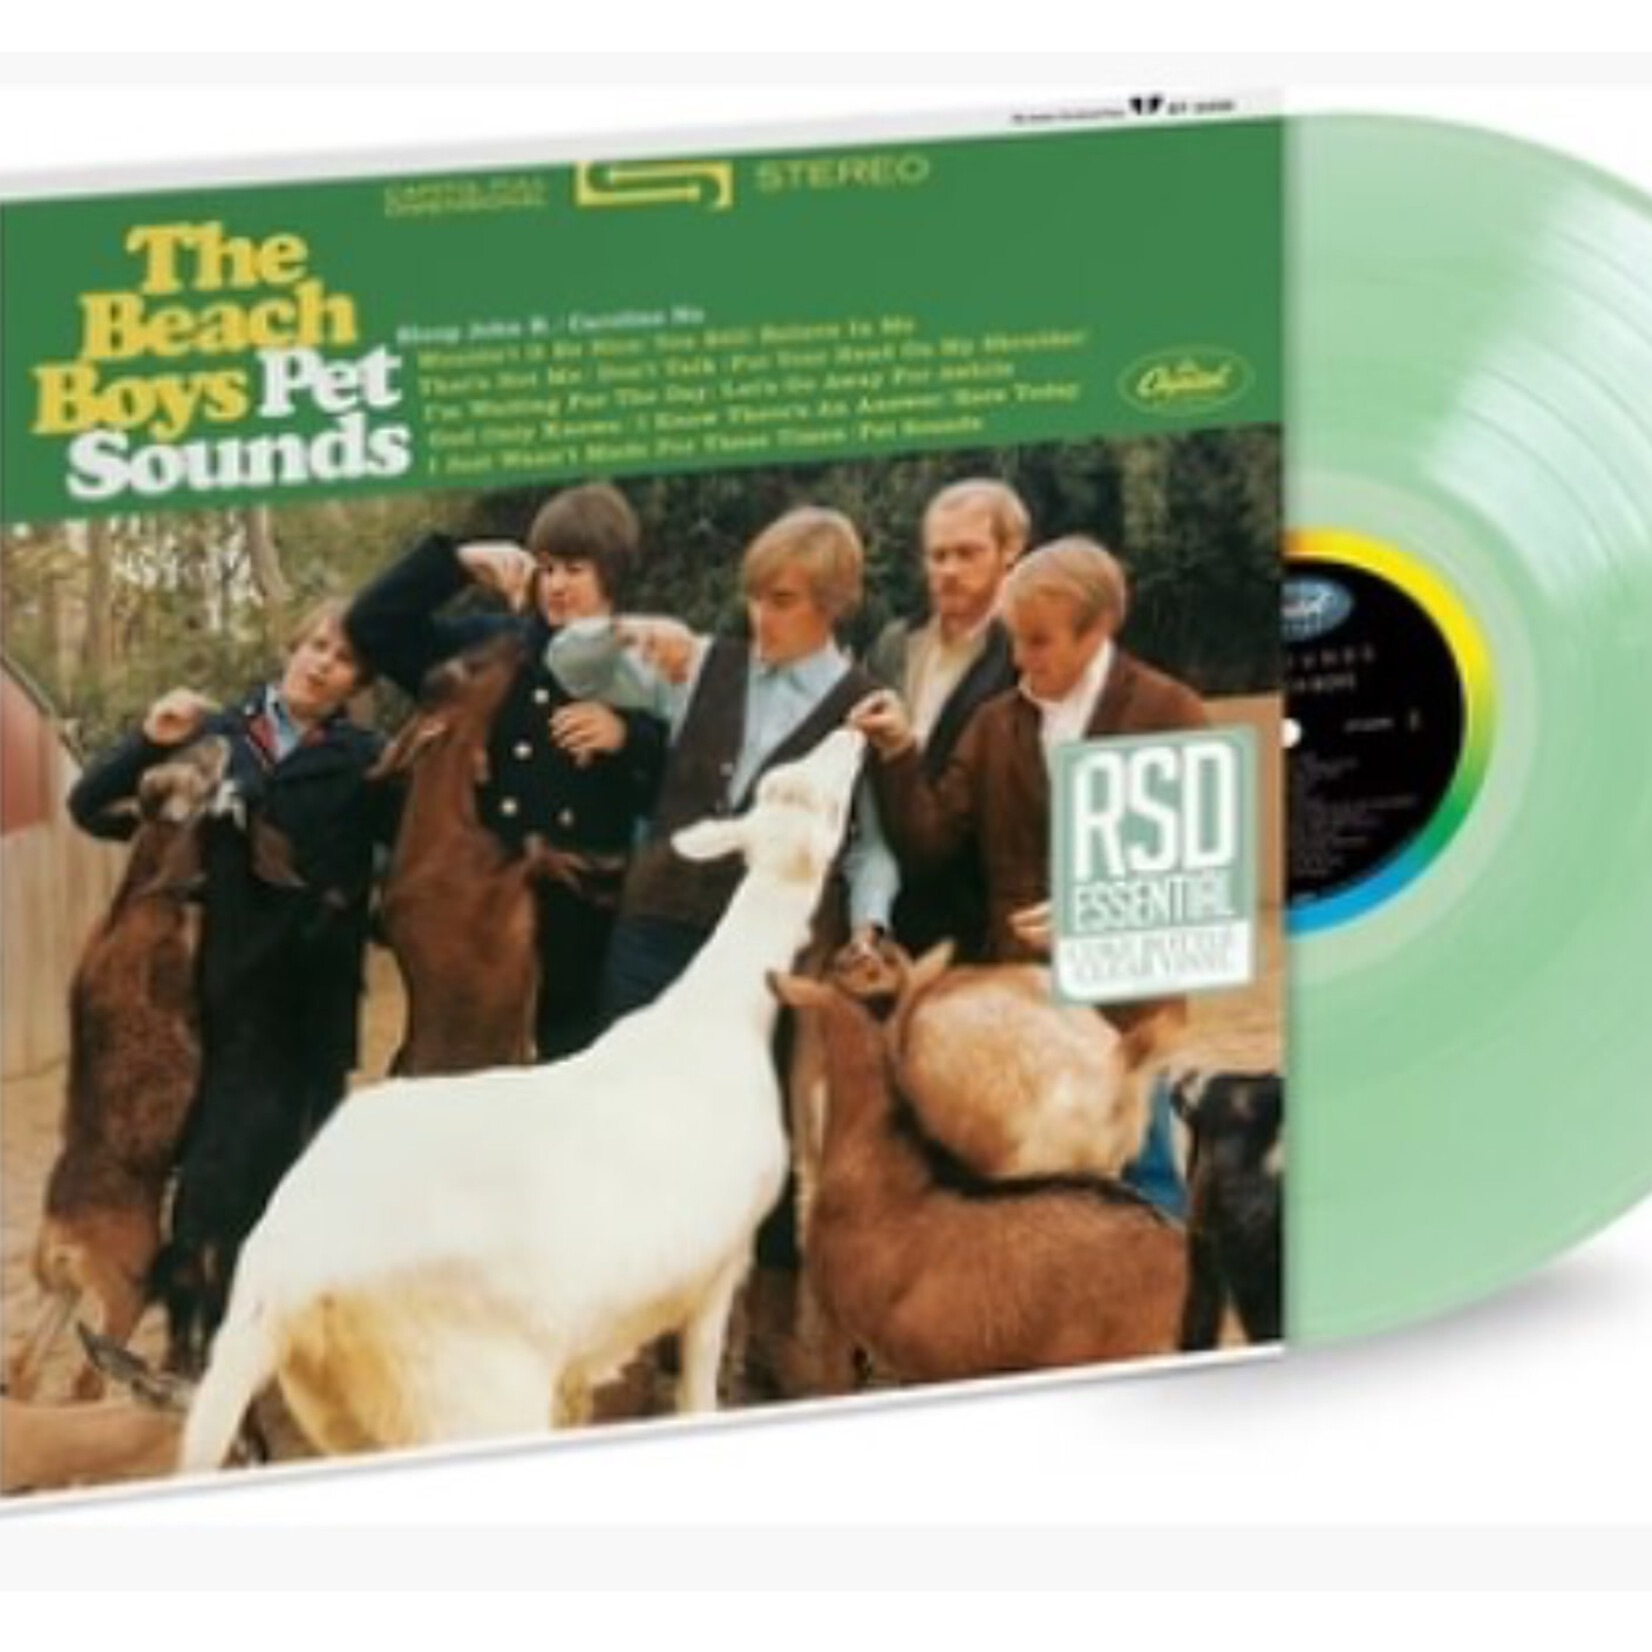 Beach Boys - Pet Sounds (Coke Bottle) - CPL662498 - Vinyl LP (NEW)